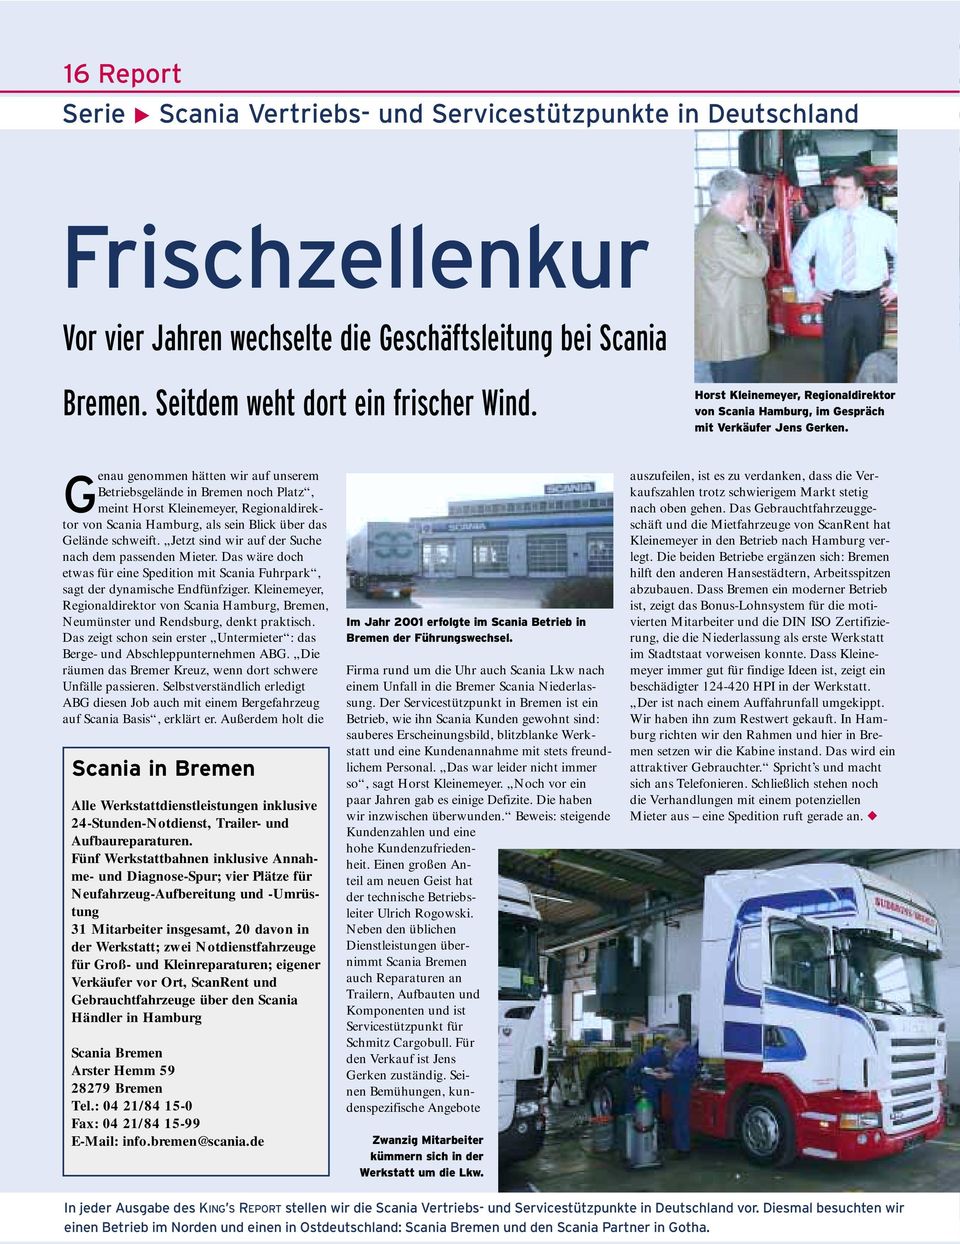 G enau genommen hätten wir auf unserem Betriebsgelände in Bremen noch Platz, meint Horst Kleinemeyer, Regionaldirektor von Scania Hamburg, als sein Blick über das Gelände schweift.